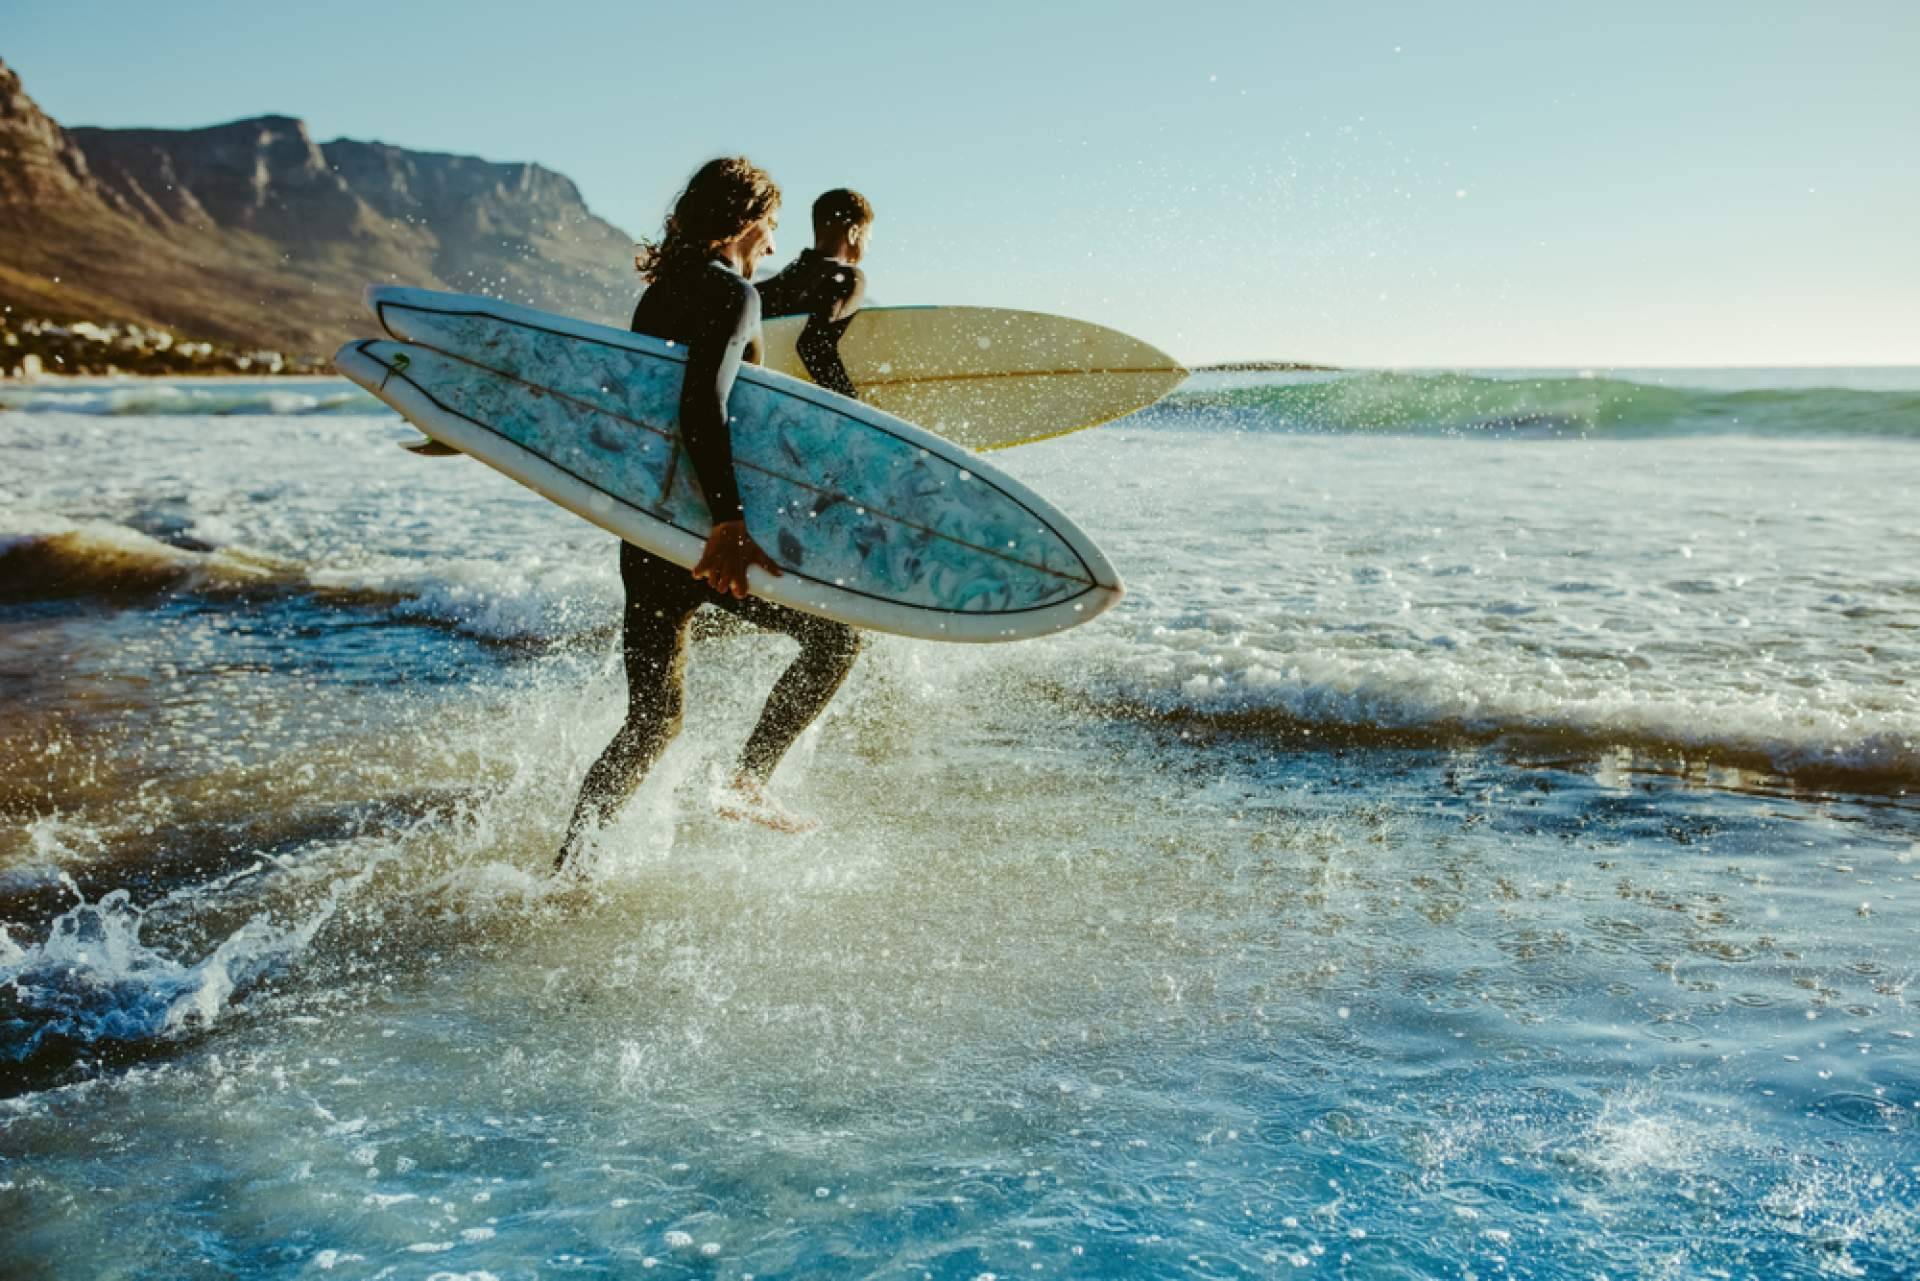 El acompañamiento en el surf para mejorar el aprendizaje, con Poseidon Surf Academy